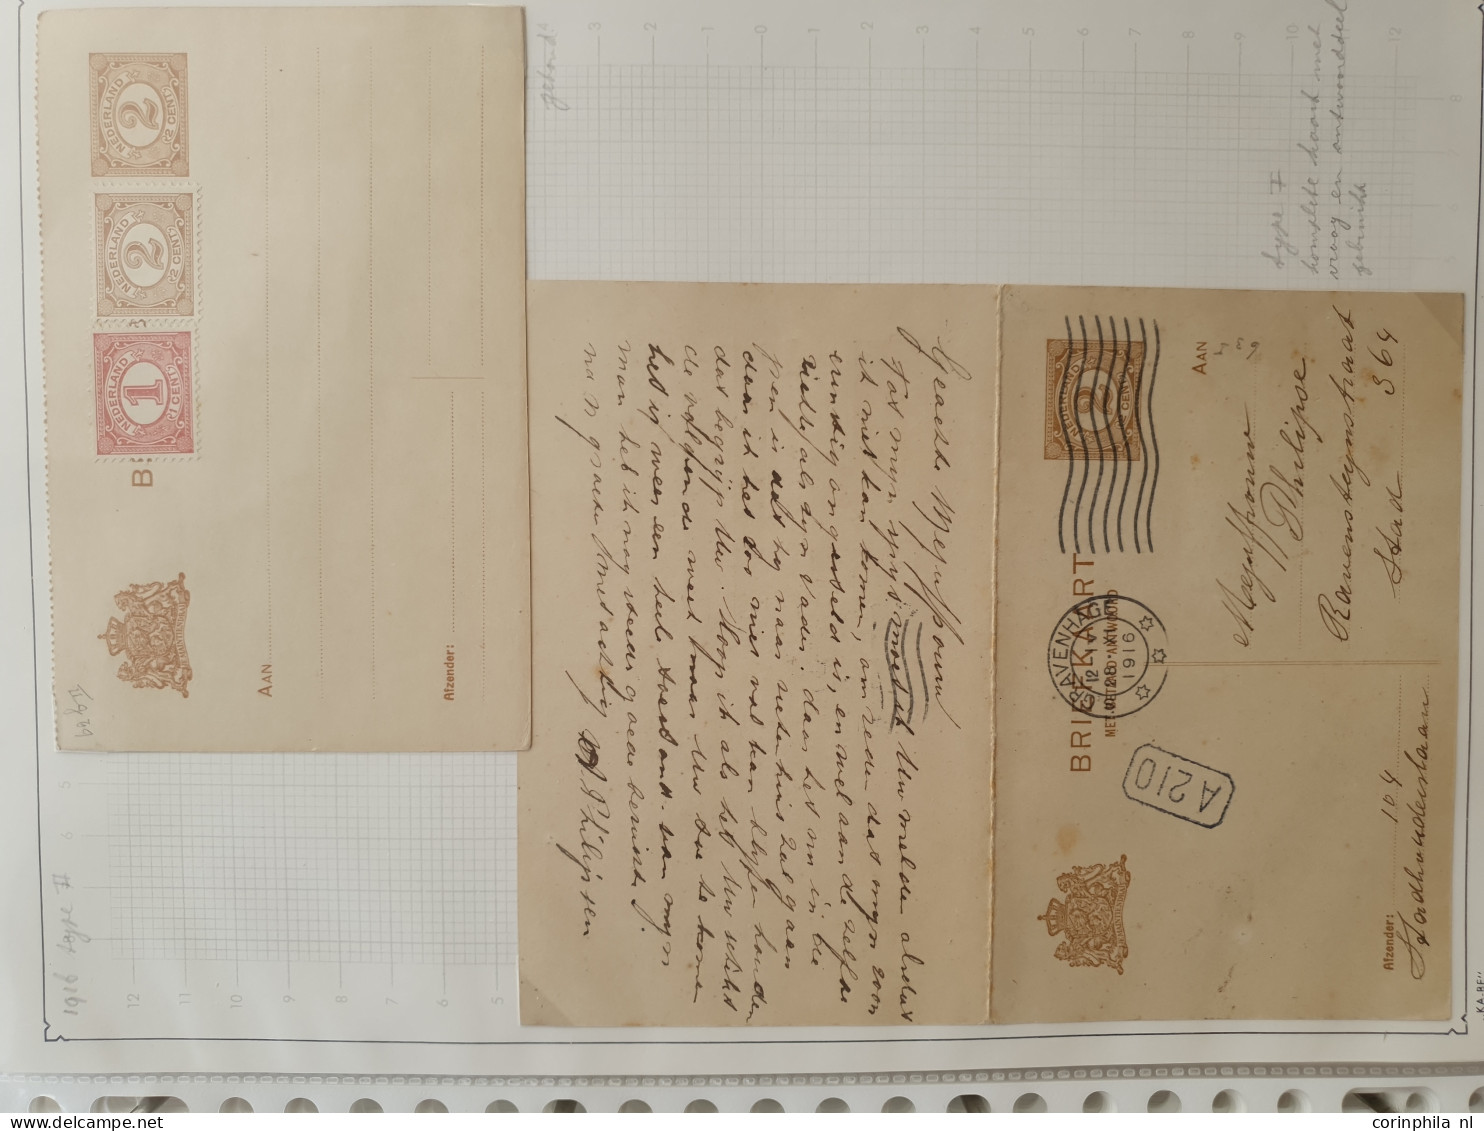 Cover 1871-2000ca. collecties postwaardestukken (ruim 600 ex.) gebruikt en ongebruikt w.b. briefkaarten, postbladen, tev